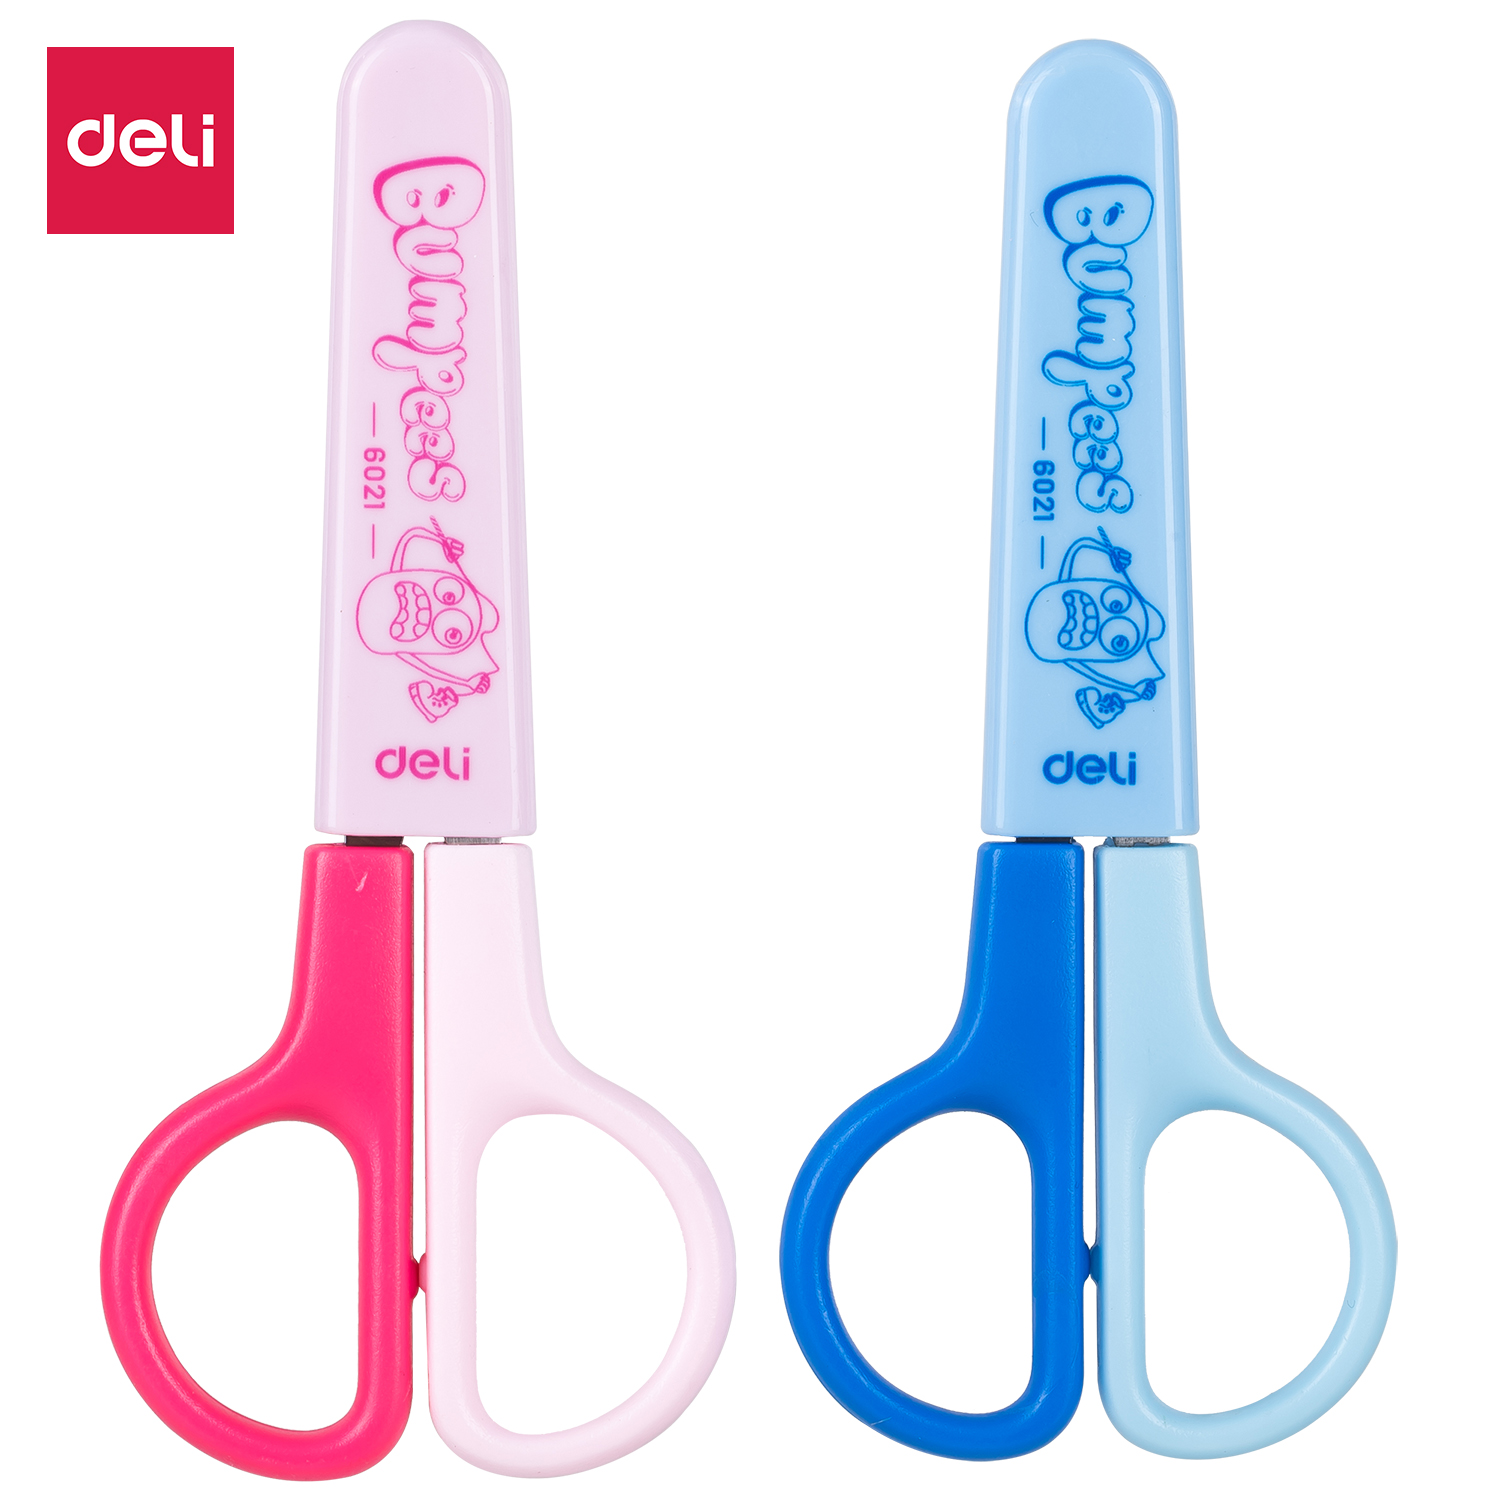 Deli-E6021 School Scissors